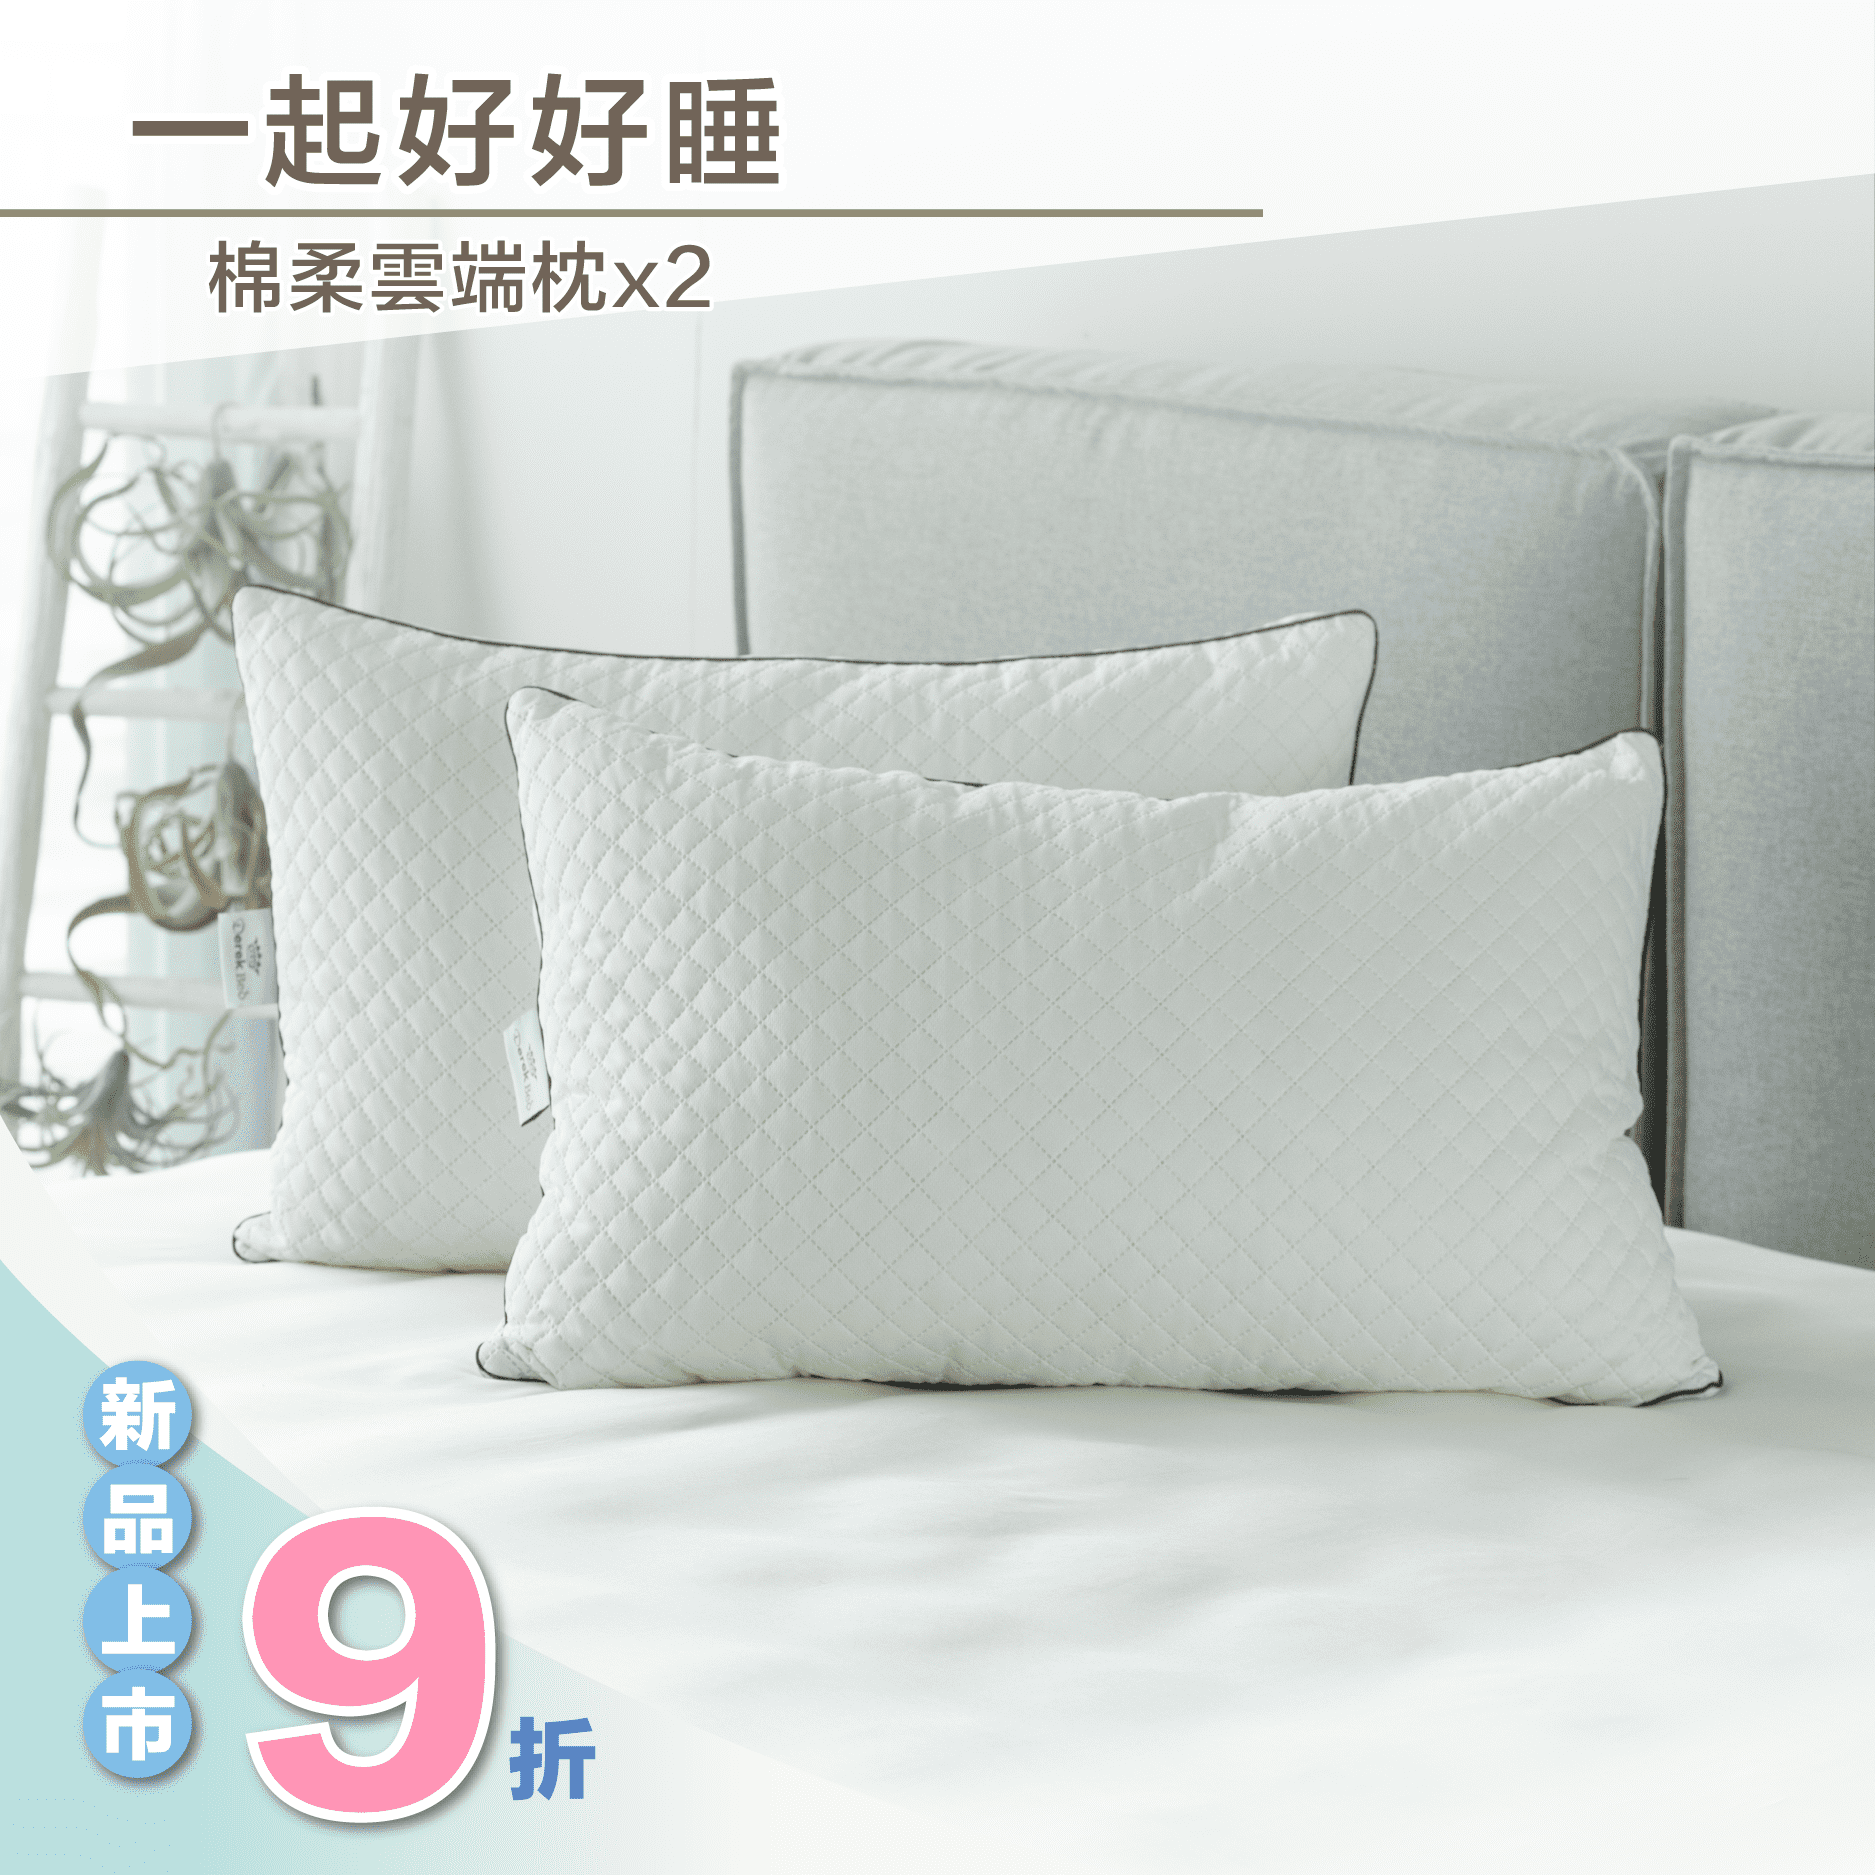 [尋物] 有沒有不是乳膠枕類型的涼感枕頭